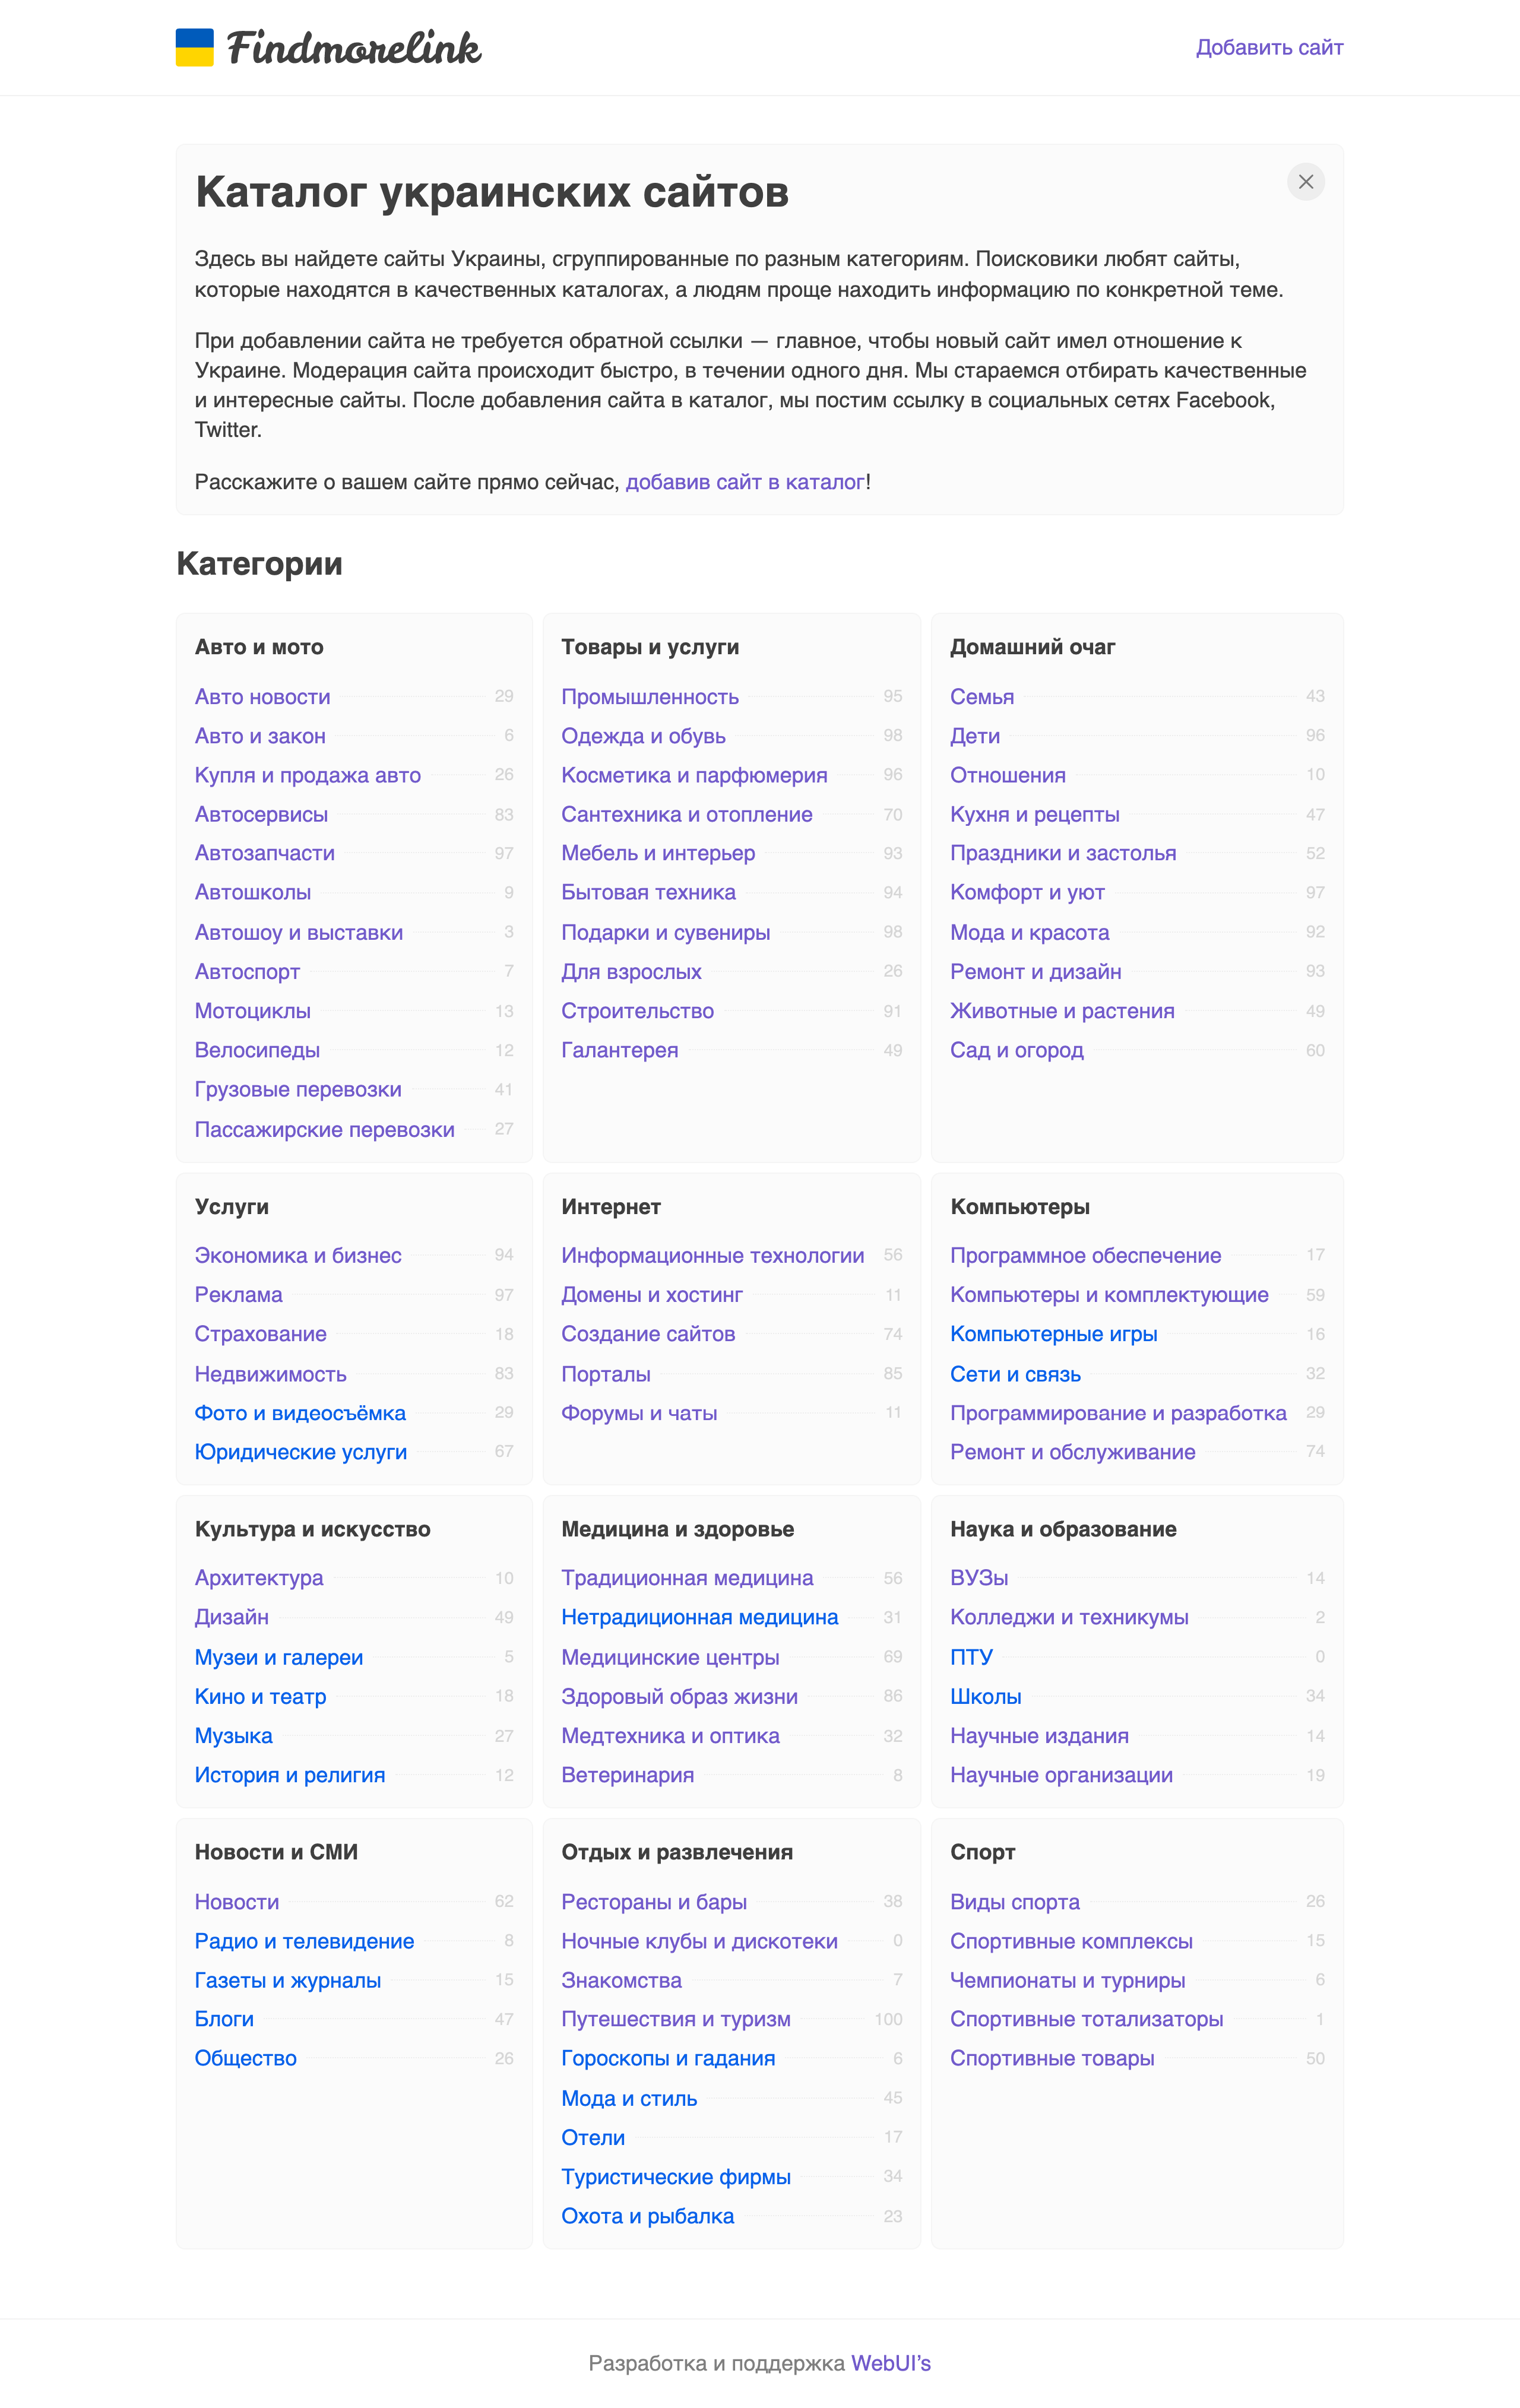 Findmorelink — catalog of ukrainian websites